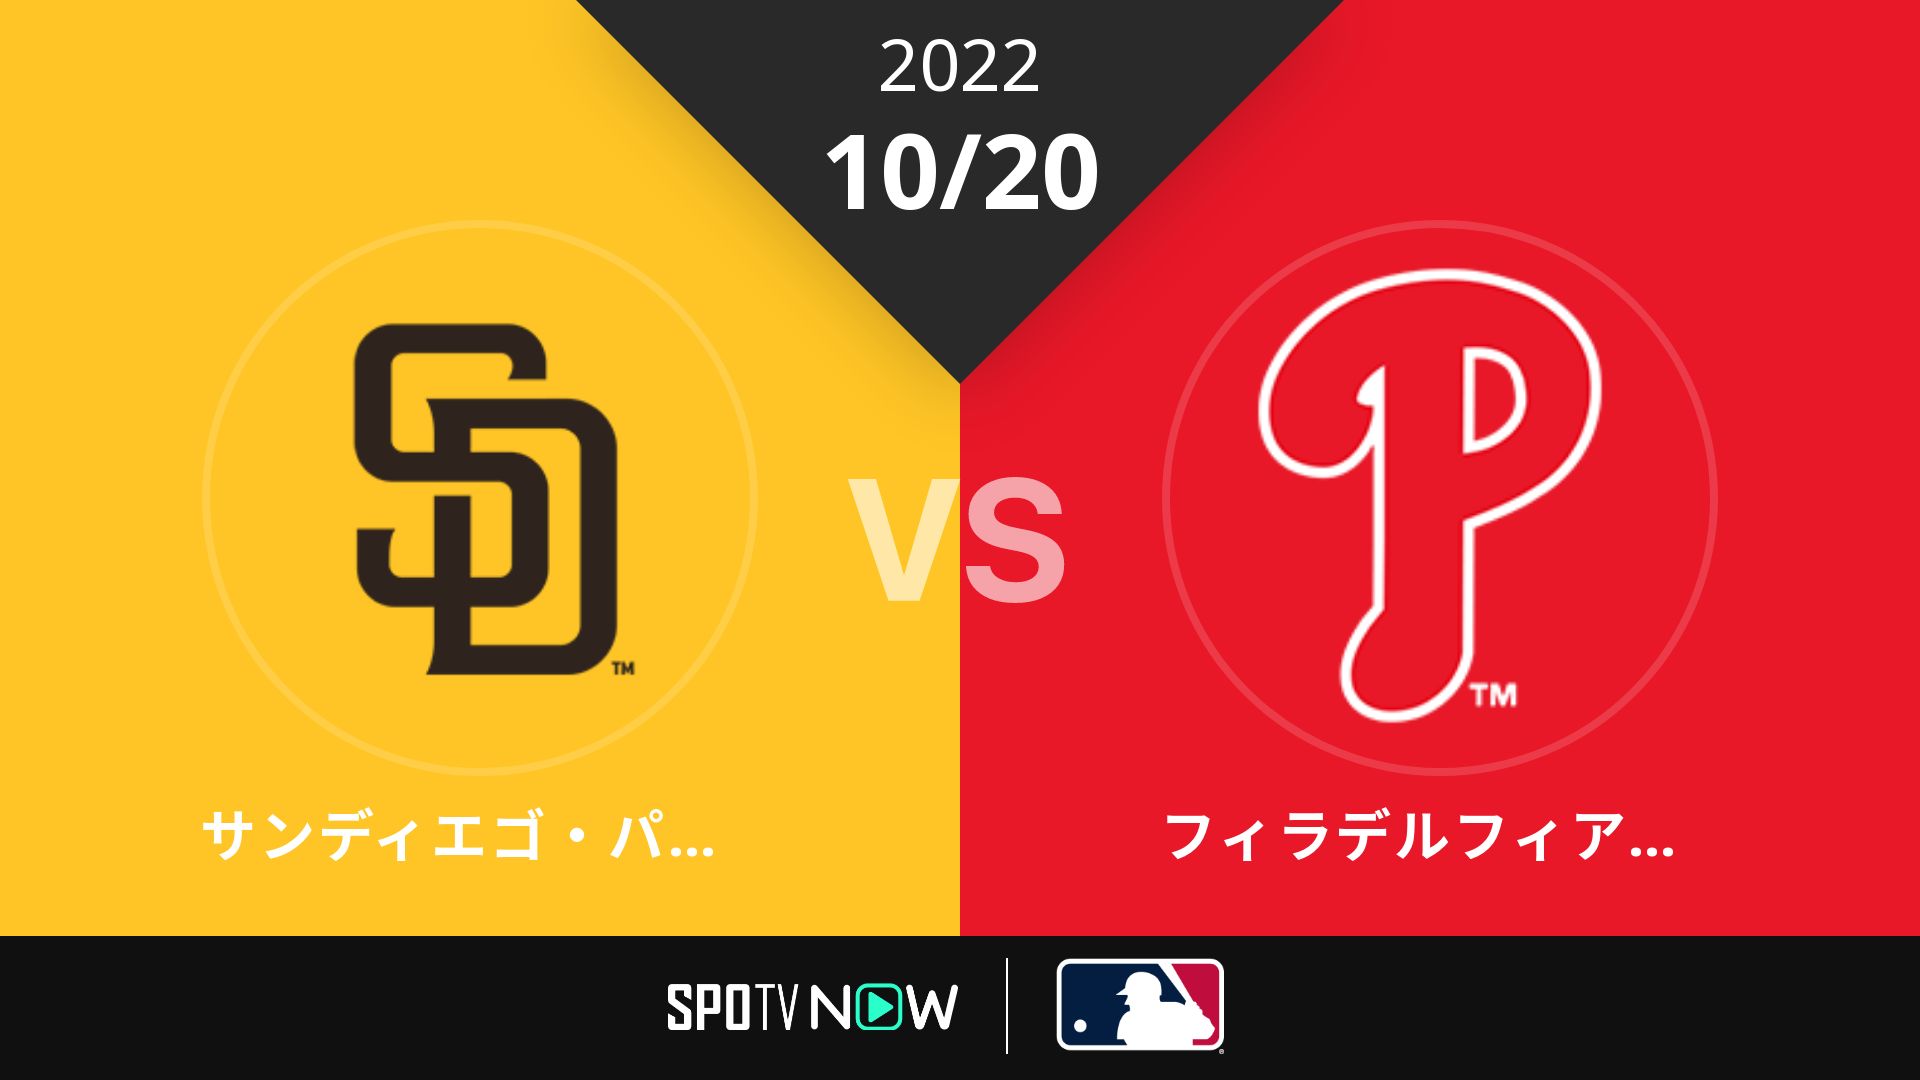 2022/10/20 パドレス vs フィリーズ [MLB]